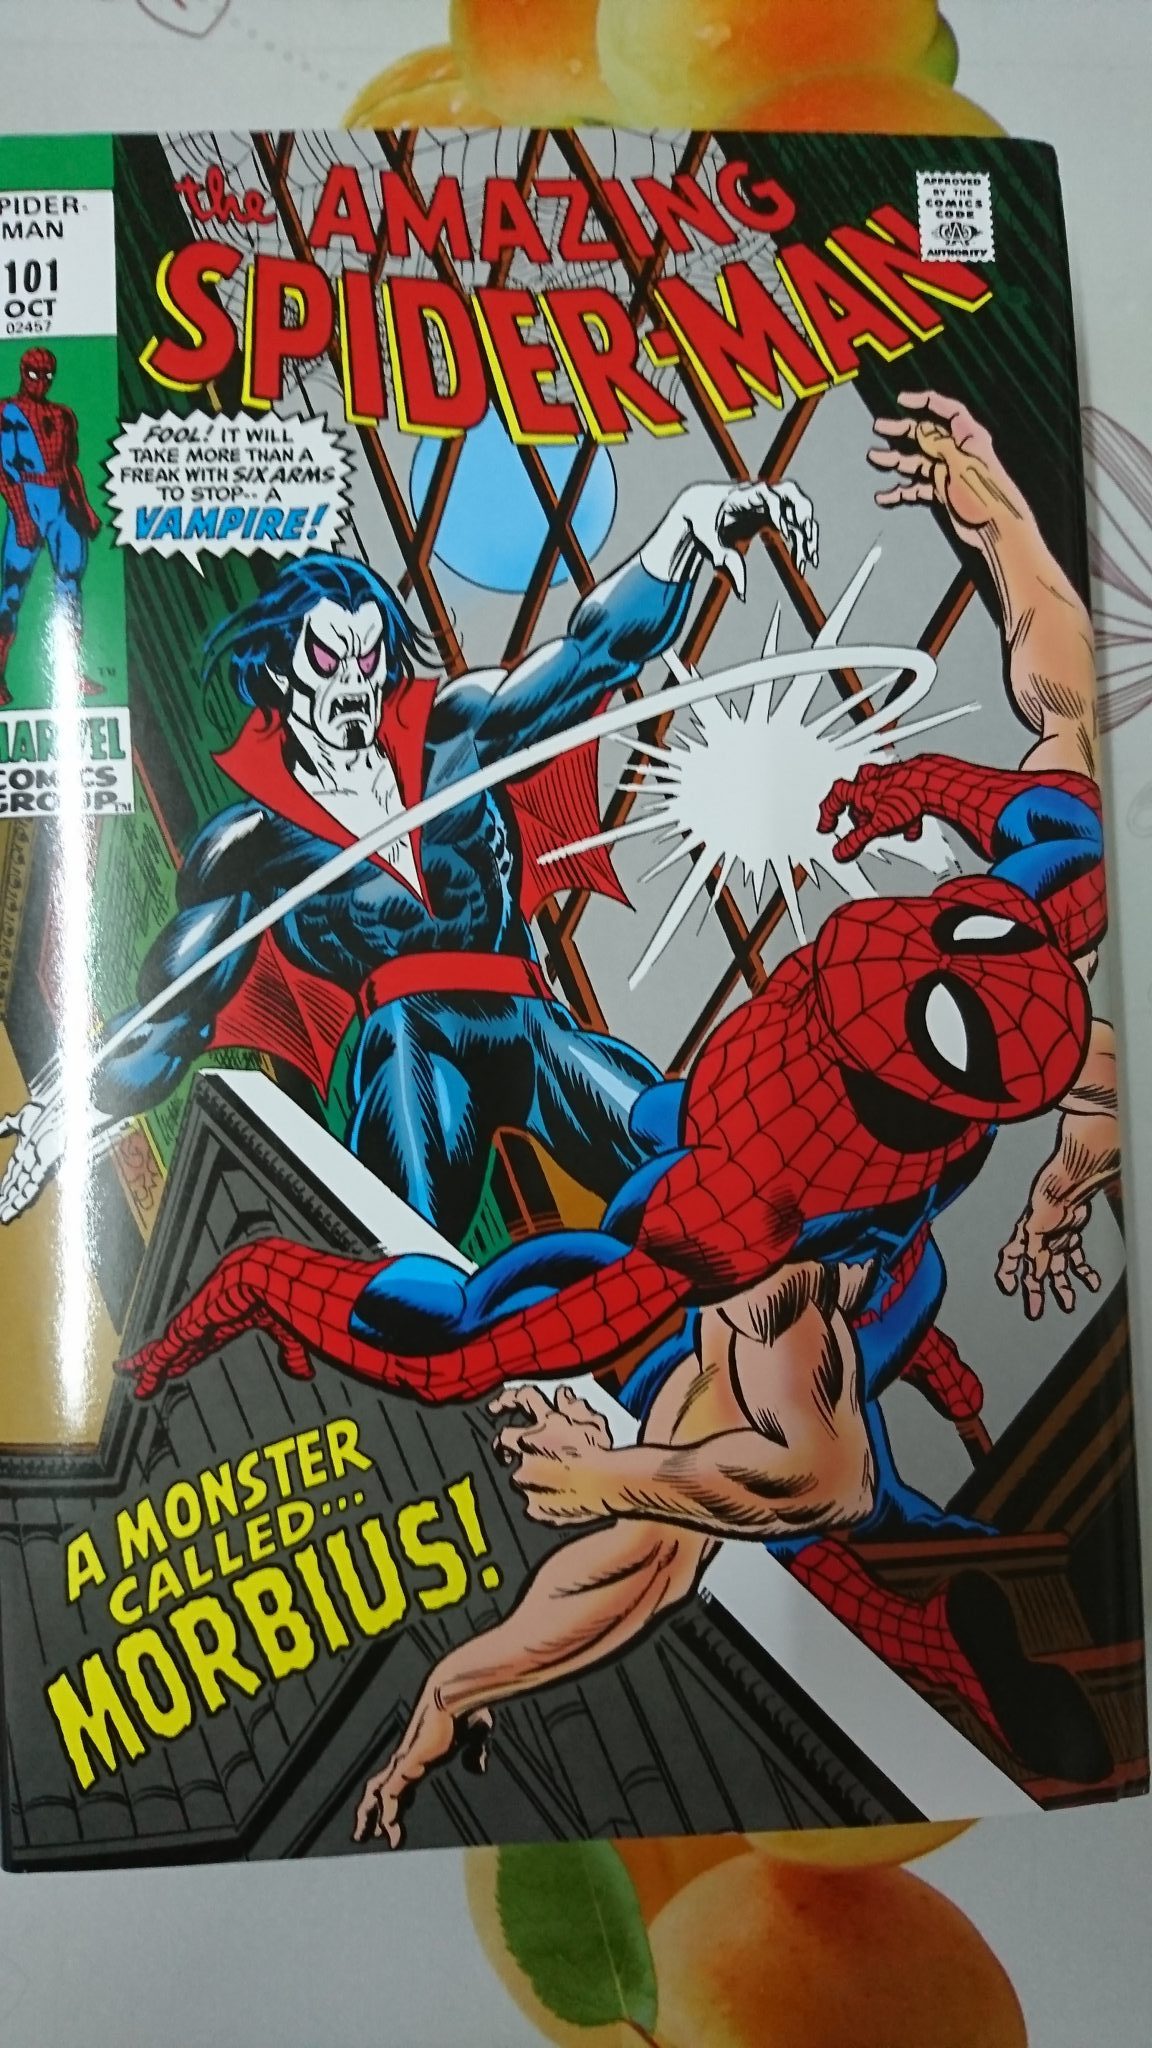 ultimate spider man omnibus volume 3